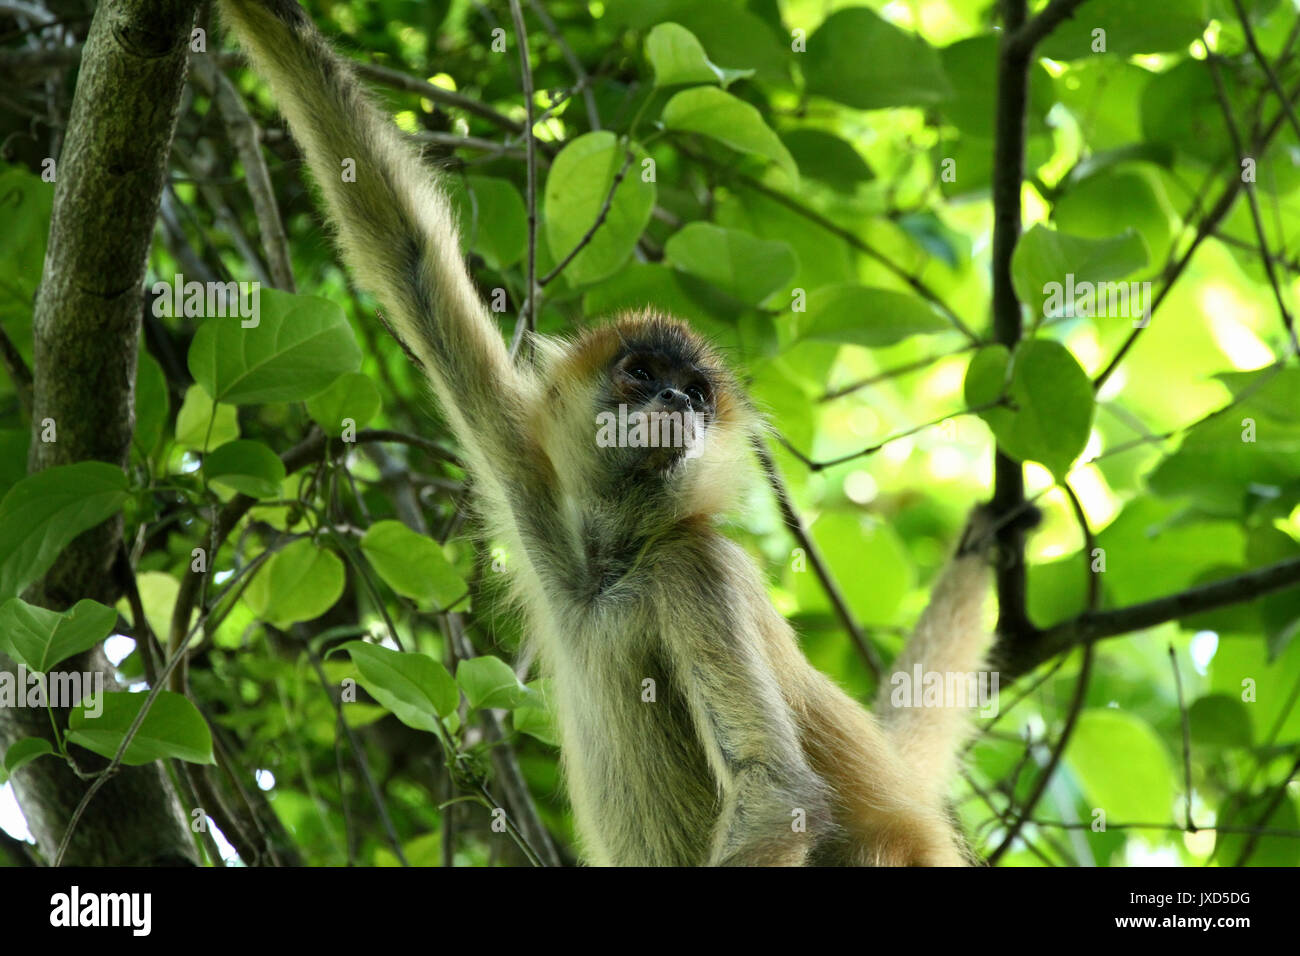 Singe dans la jungle du costa rica - singe-araignée goffrey Banque D'Images